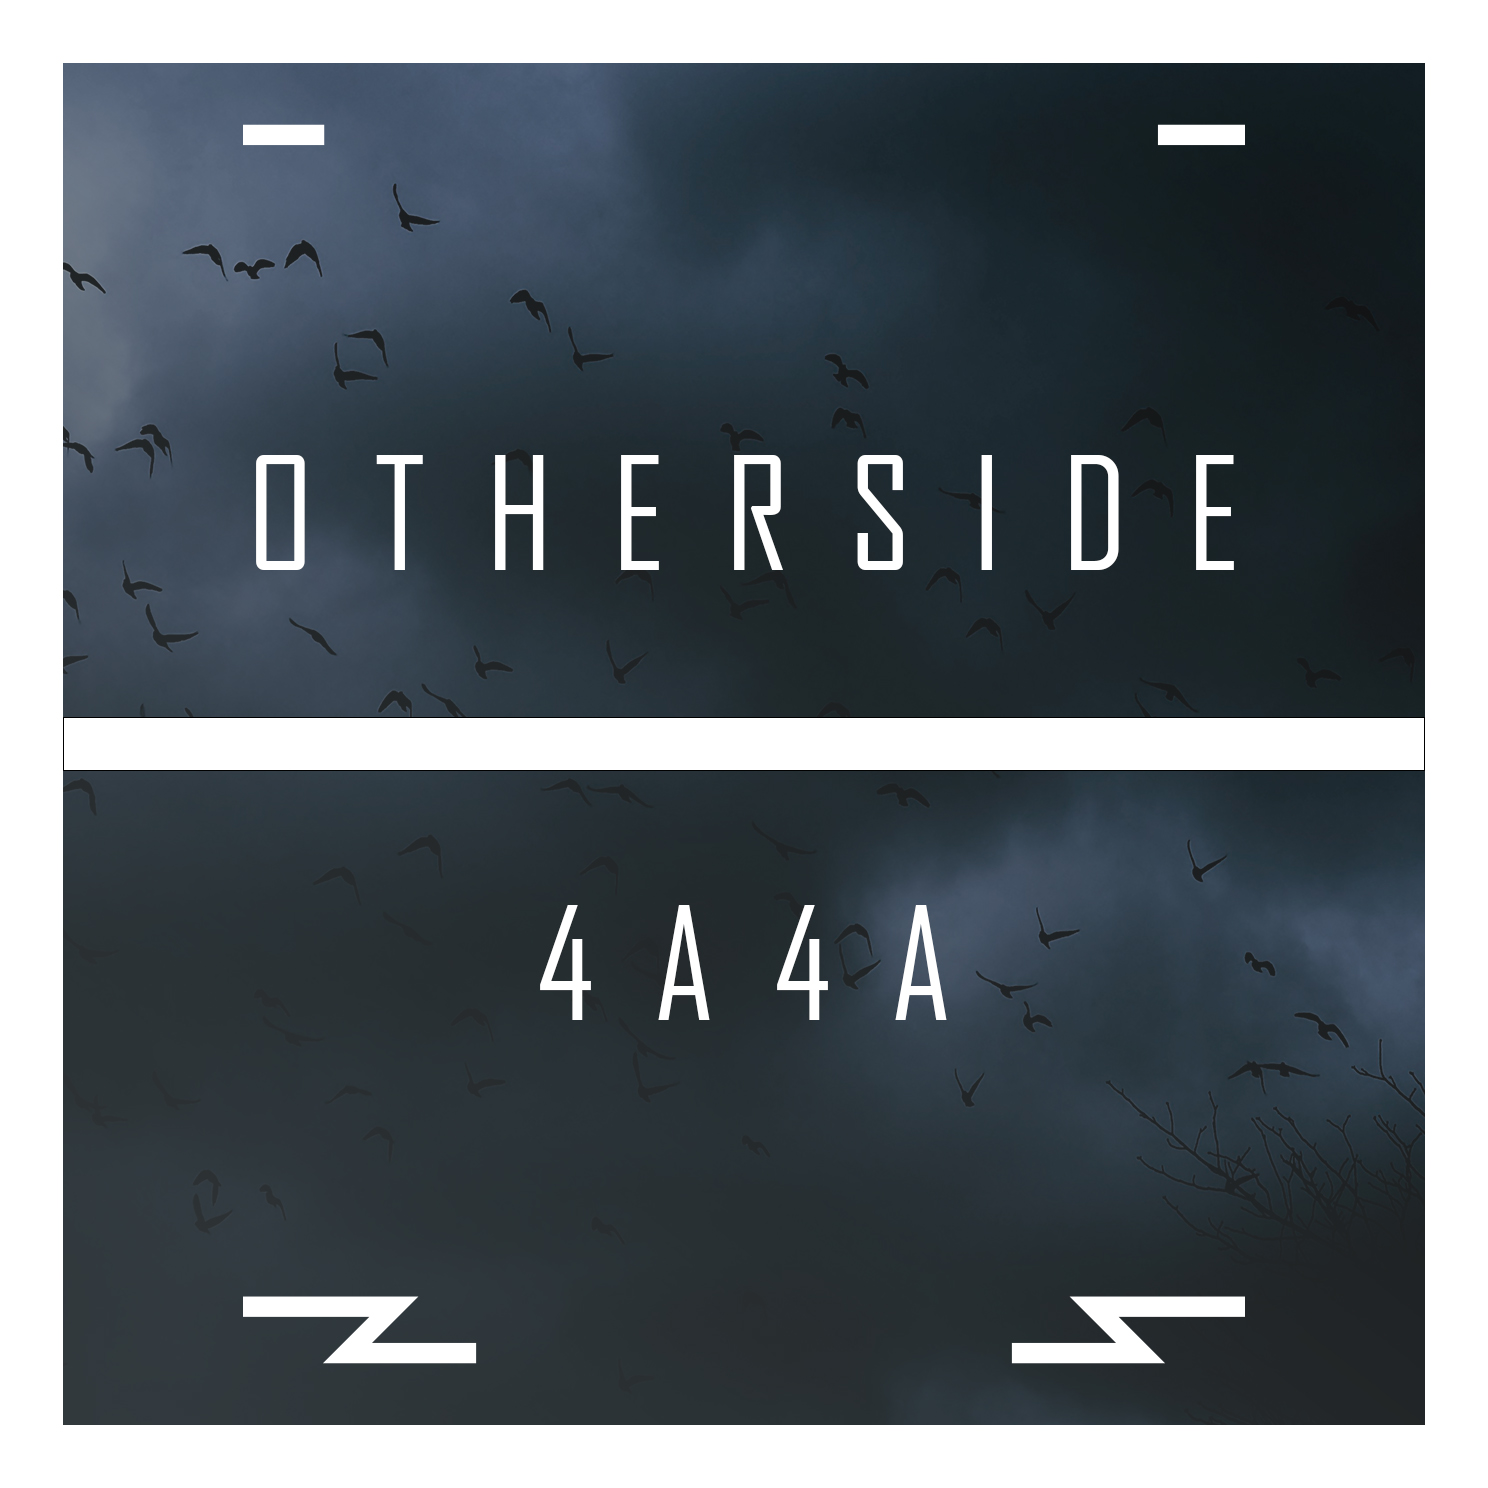 4a4a - Otherside (Original Mix)